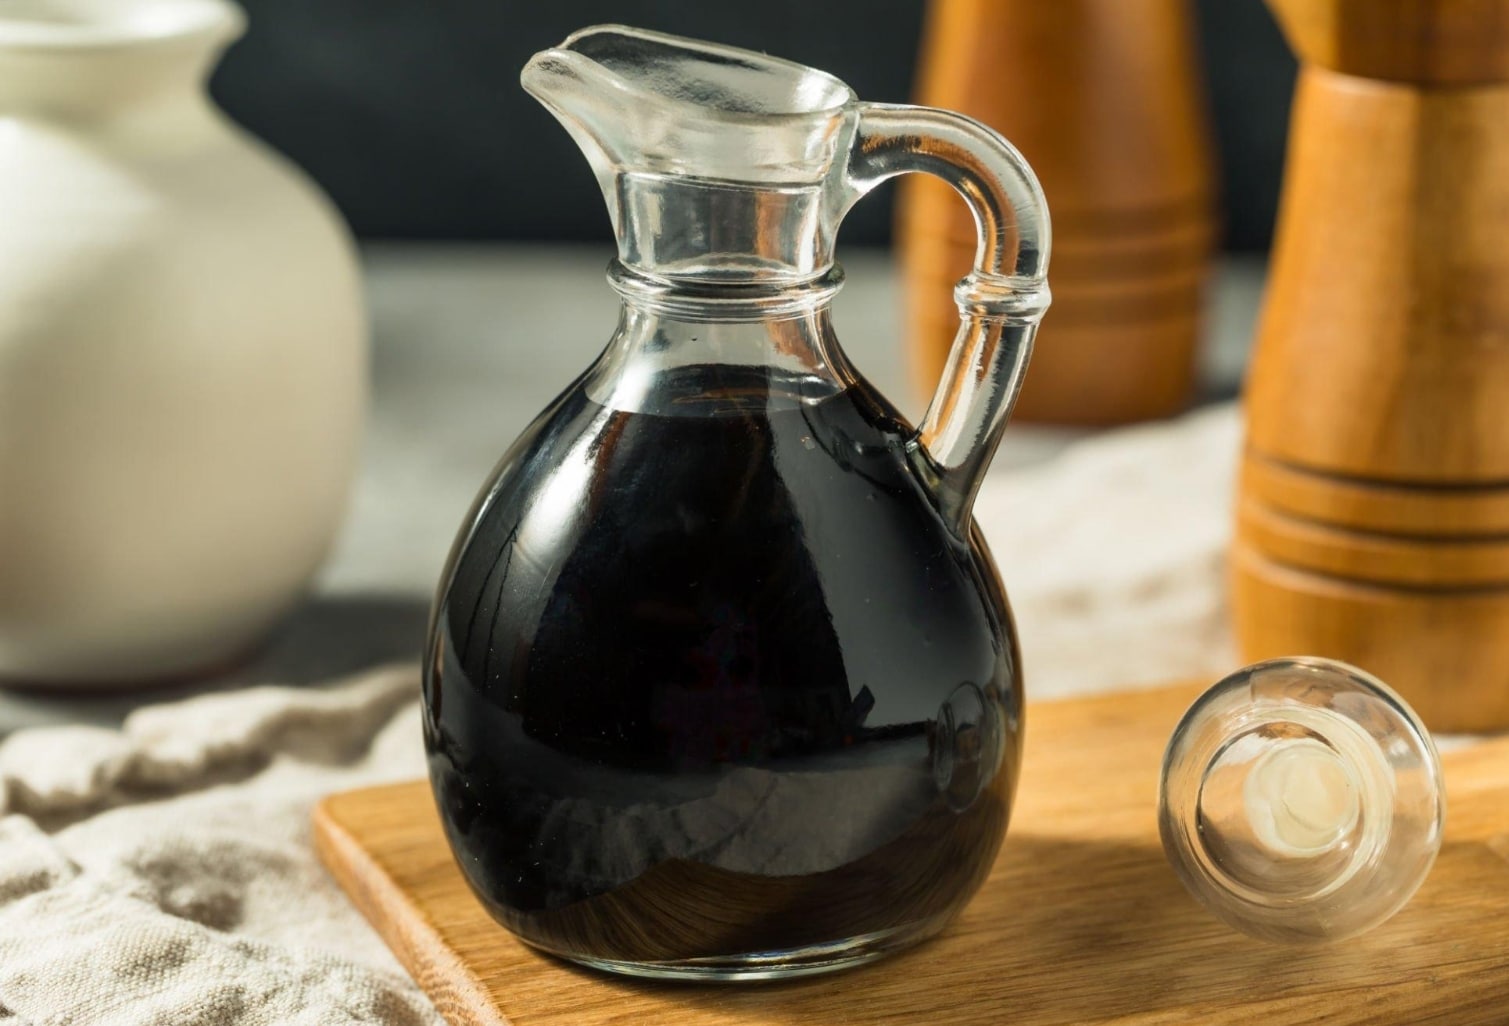 Is Balsamic Glaze Vinegar Good for You?